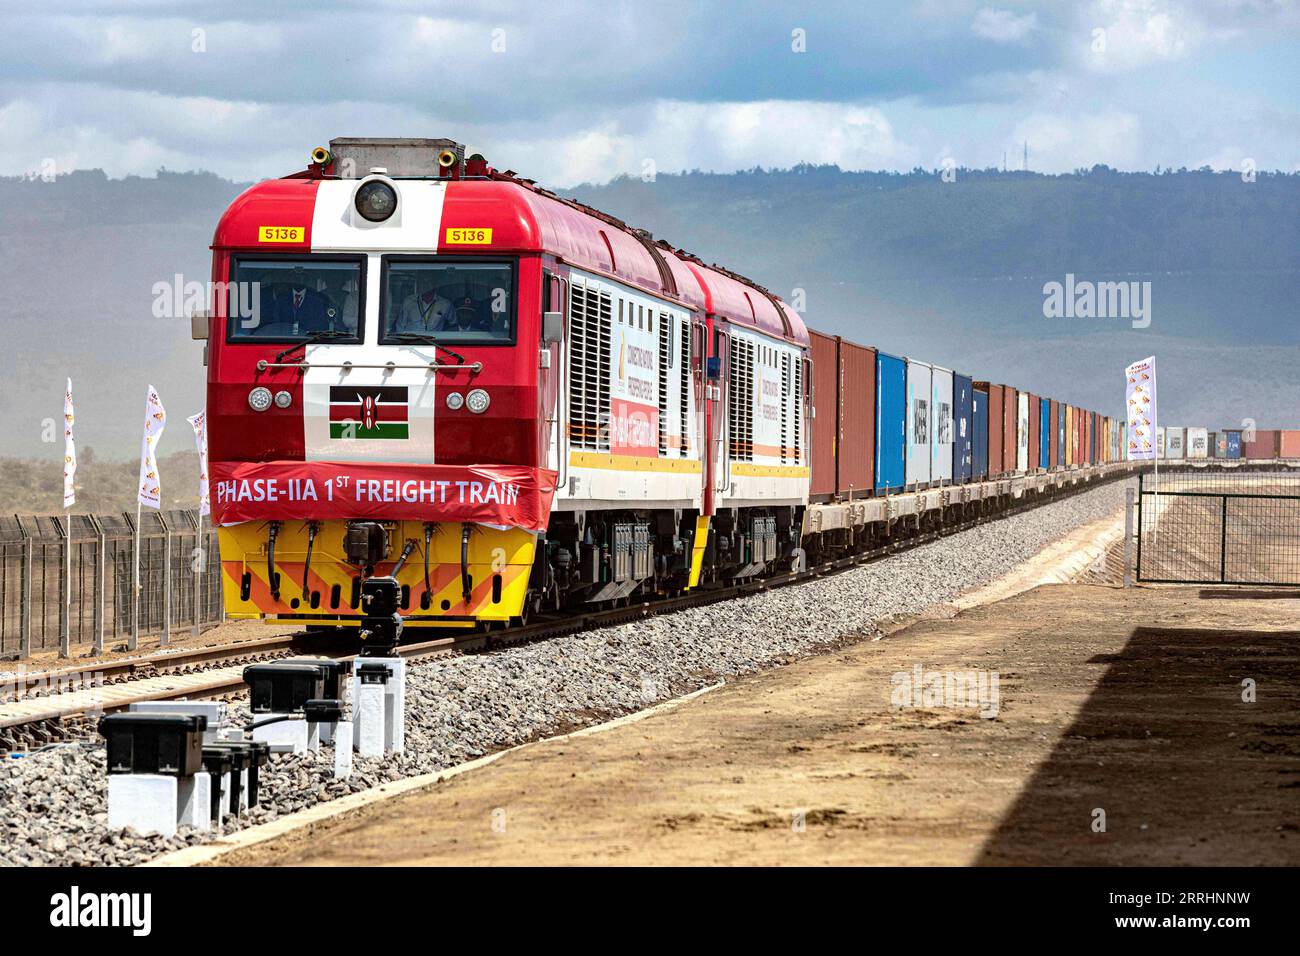 220705 -- NAIROBI, 5. Juli 2022 -- der erste Güterzug der Nairobi-Naivasha Standard Gauge Railway SGR kommt am 17. Dezember 2019 im Naivasha Inland Container Depot in Kenia an. Die 120 km lange Nairobi-Naivasha-Eisenbahn ist eine Erweiterung der in China gebauten modernen Eisenbahn, die Kenias Küstenstadt Mombasa mit der Hauptstadt Nairobi verbindet. Die Mombasa-Nairobi SGR, die hauptsächlich von China finanziert und von der China Road and Bridge Corporation CRBC gebaut wurde, begann 2014 mit dem Bau und endete 2017. Nach Angaben von Afristar verfügt die Mombasa-Nairobi Standard Gauge Railway SGR über Transpor Stockfoto